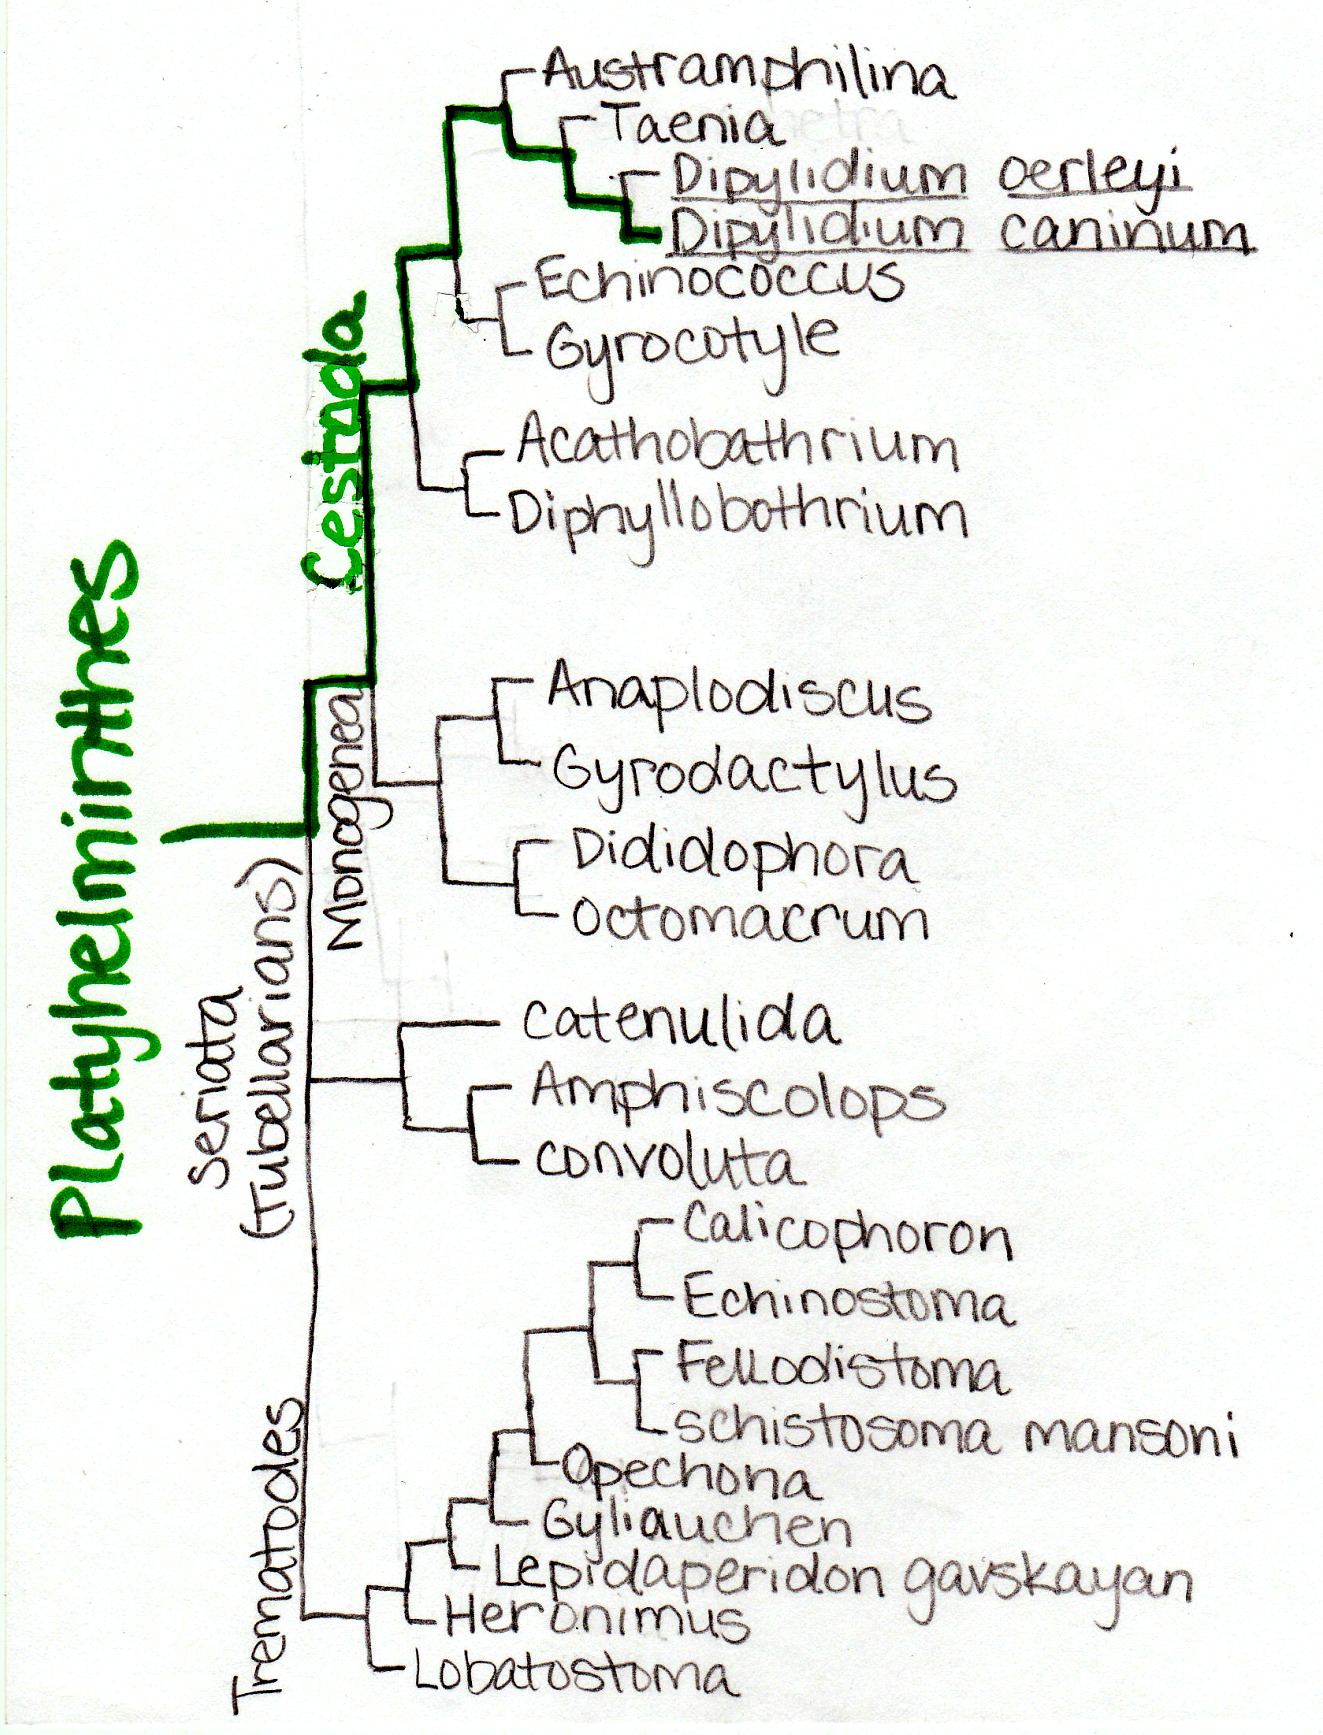 taxonómia phylum platyhelminthes